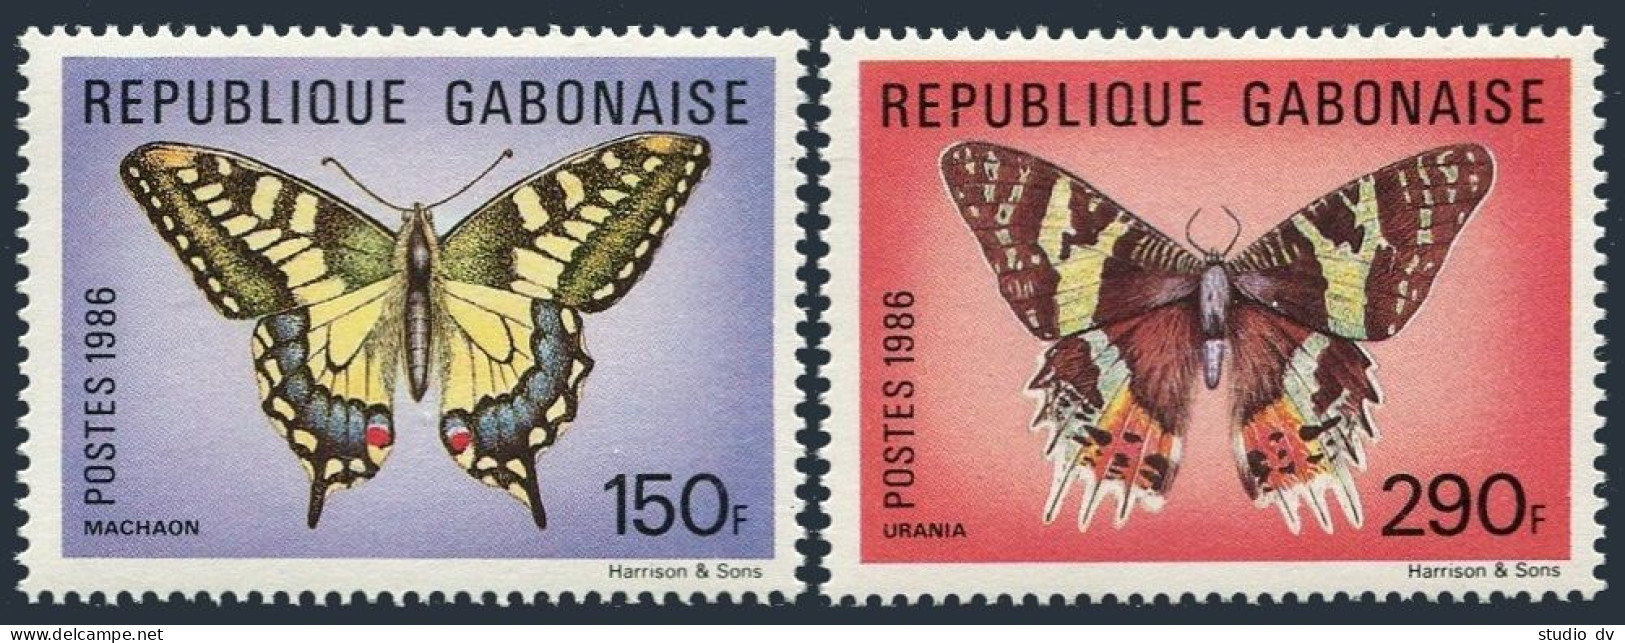 Gabon 605-606, MNH. Michel 969-970. Butterflies 1986. - Gabon